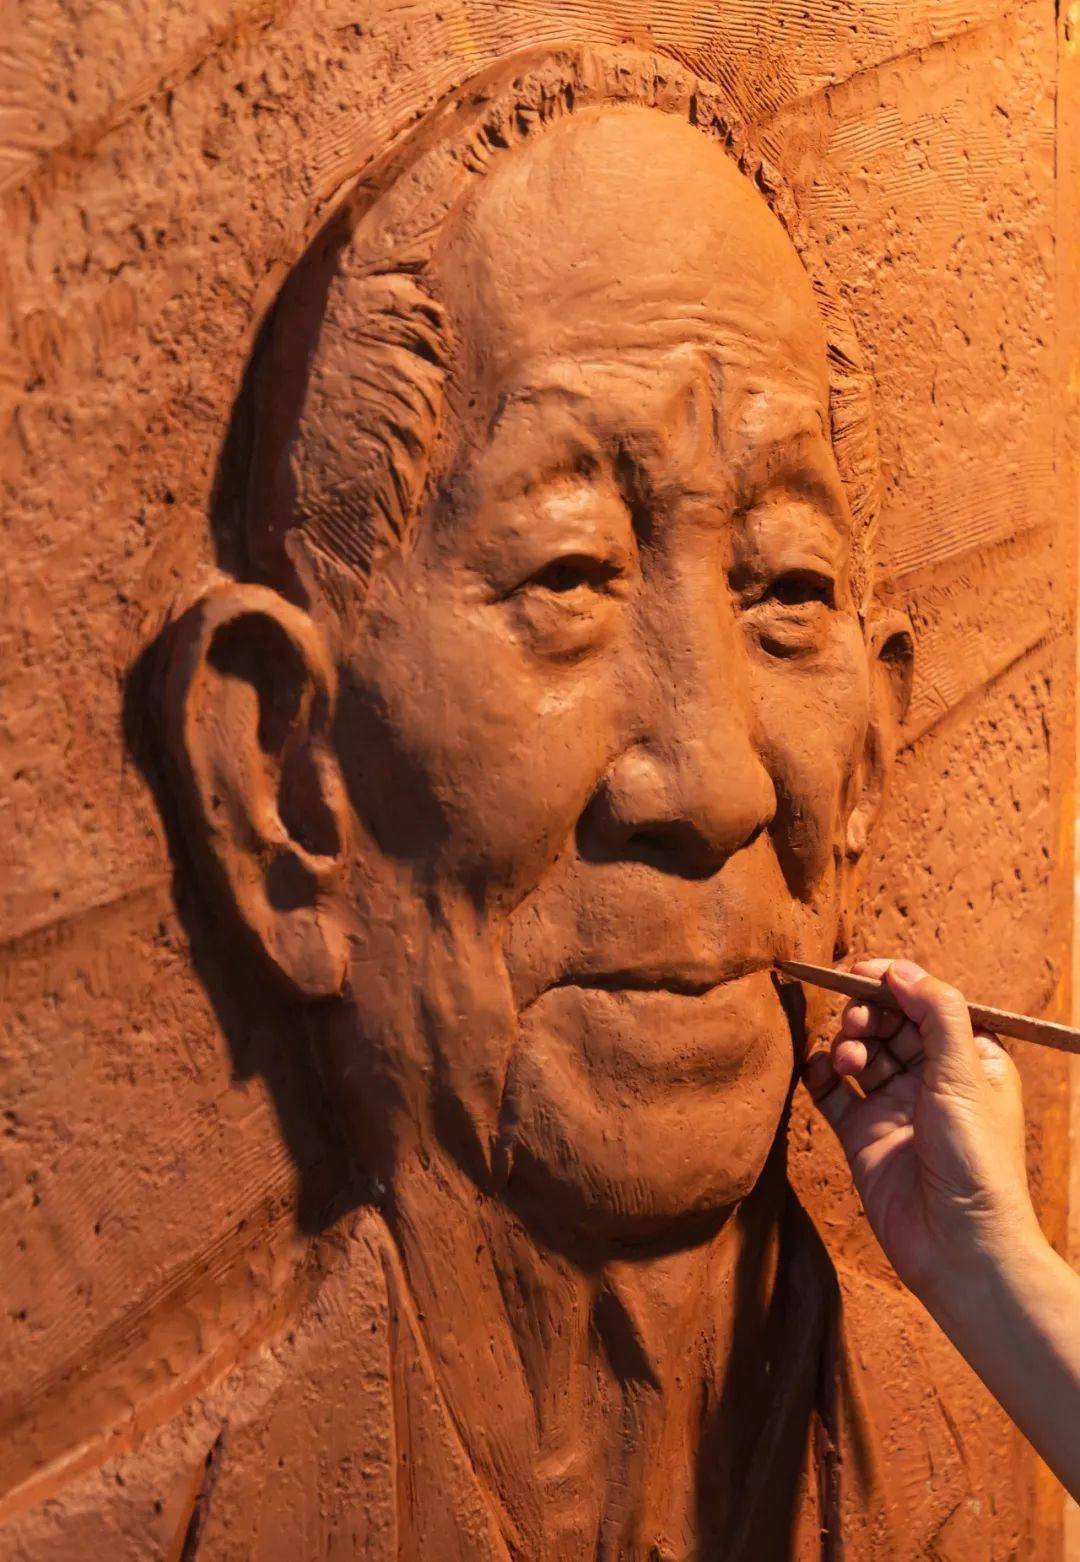 人民日报报道:广州雕塑家创作袁隆平浮雕,诉说感念真情